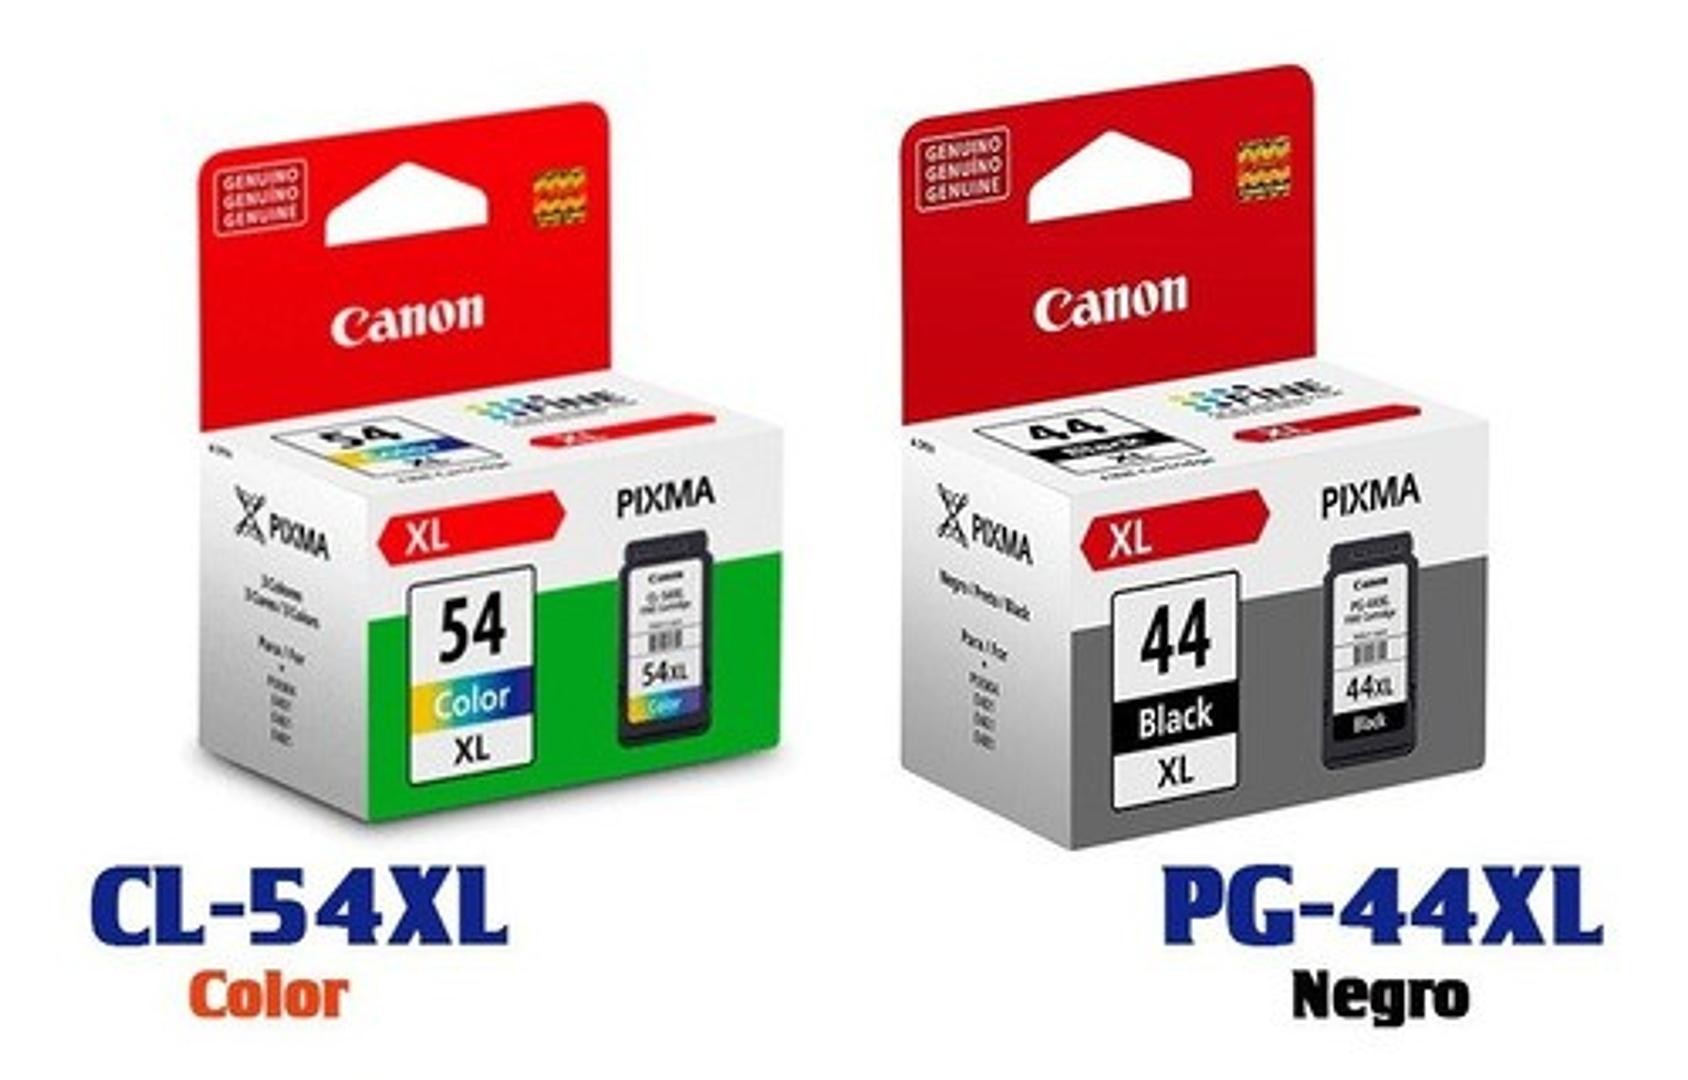 impresoras y scanners - CARTUCHO CANON PG-44 XL NEGRO, Y 54XL COLOR  ALTO RENDIMIENTO MAS CANTIDAD 